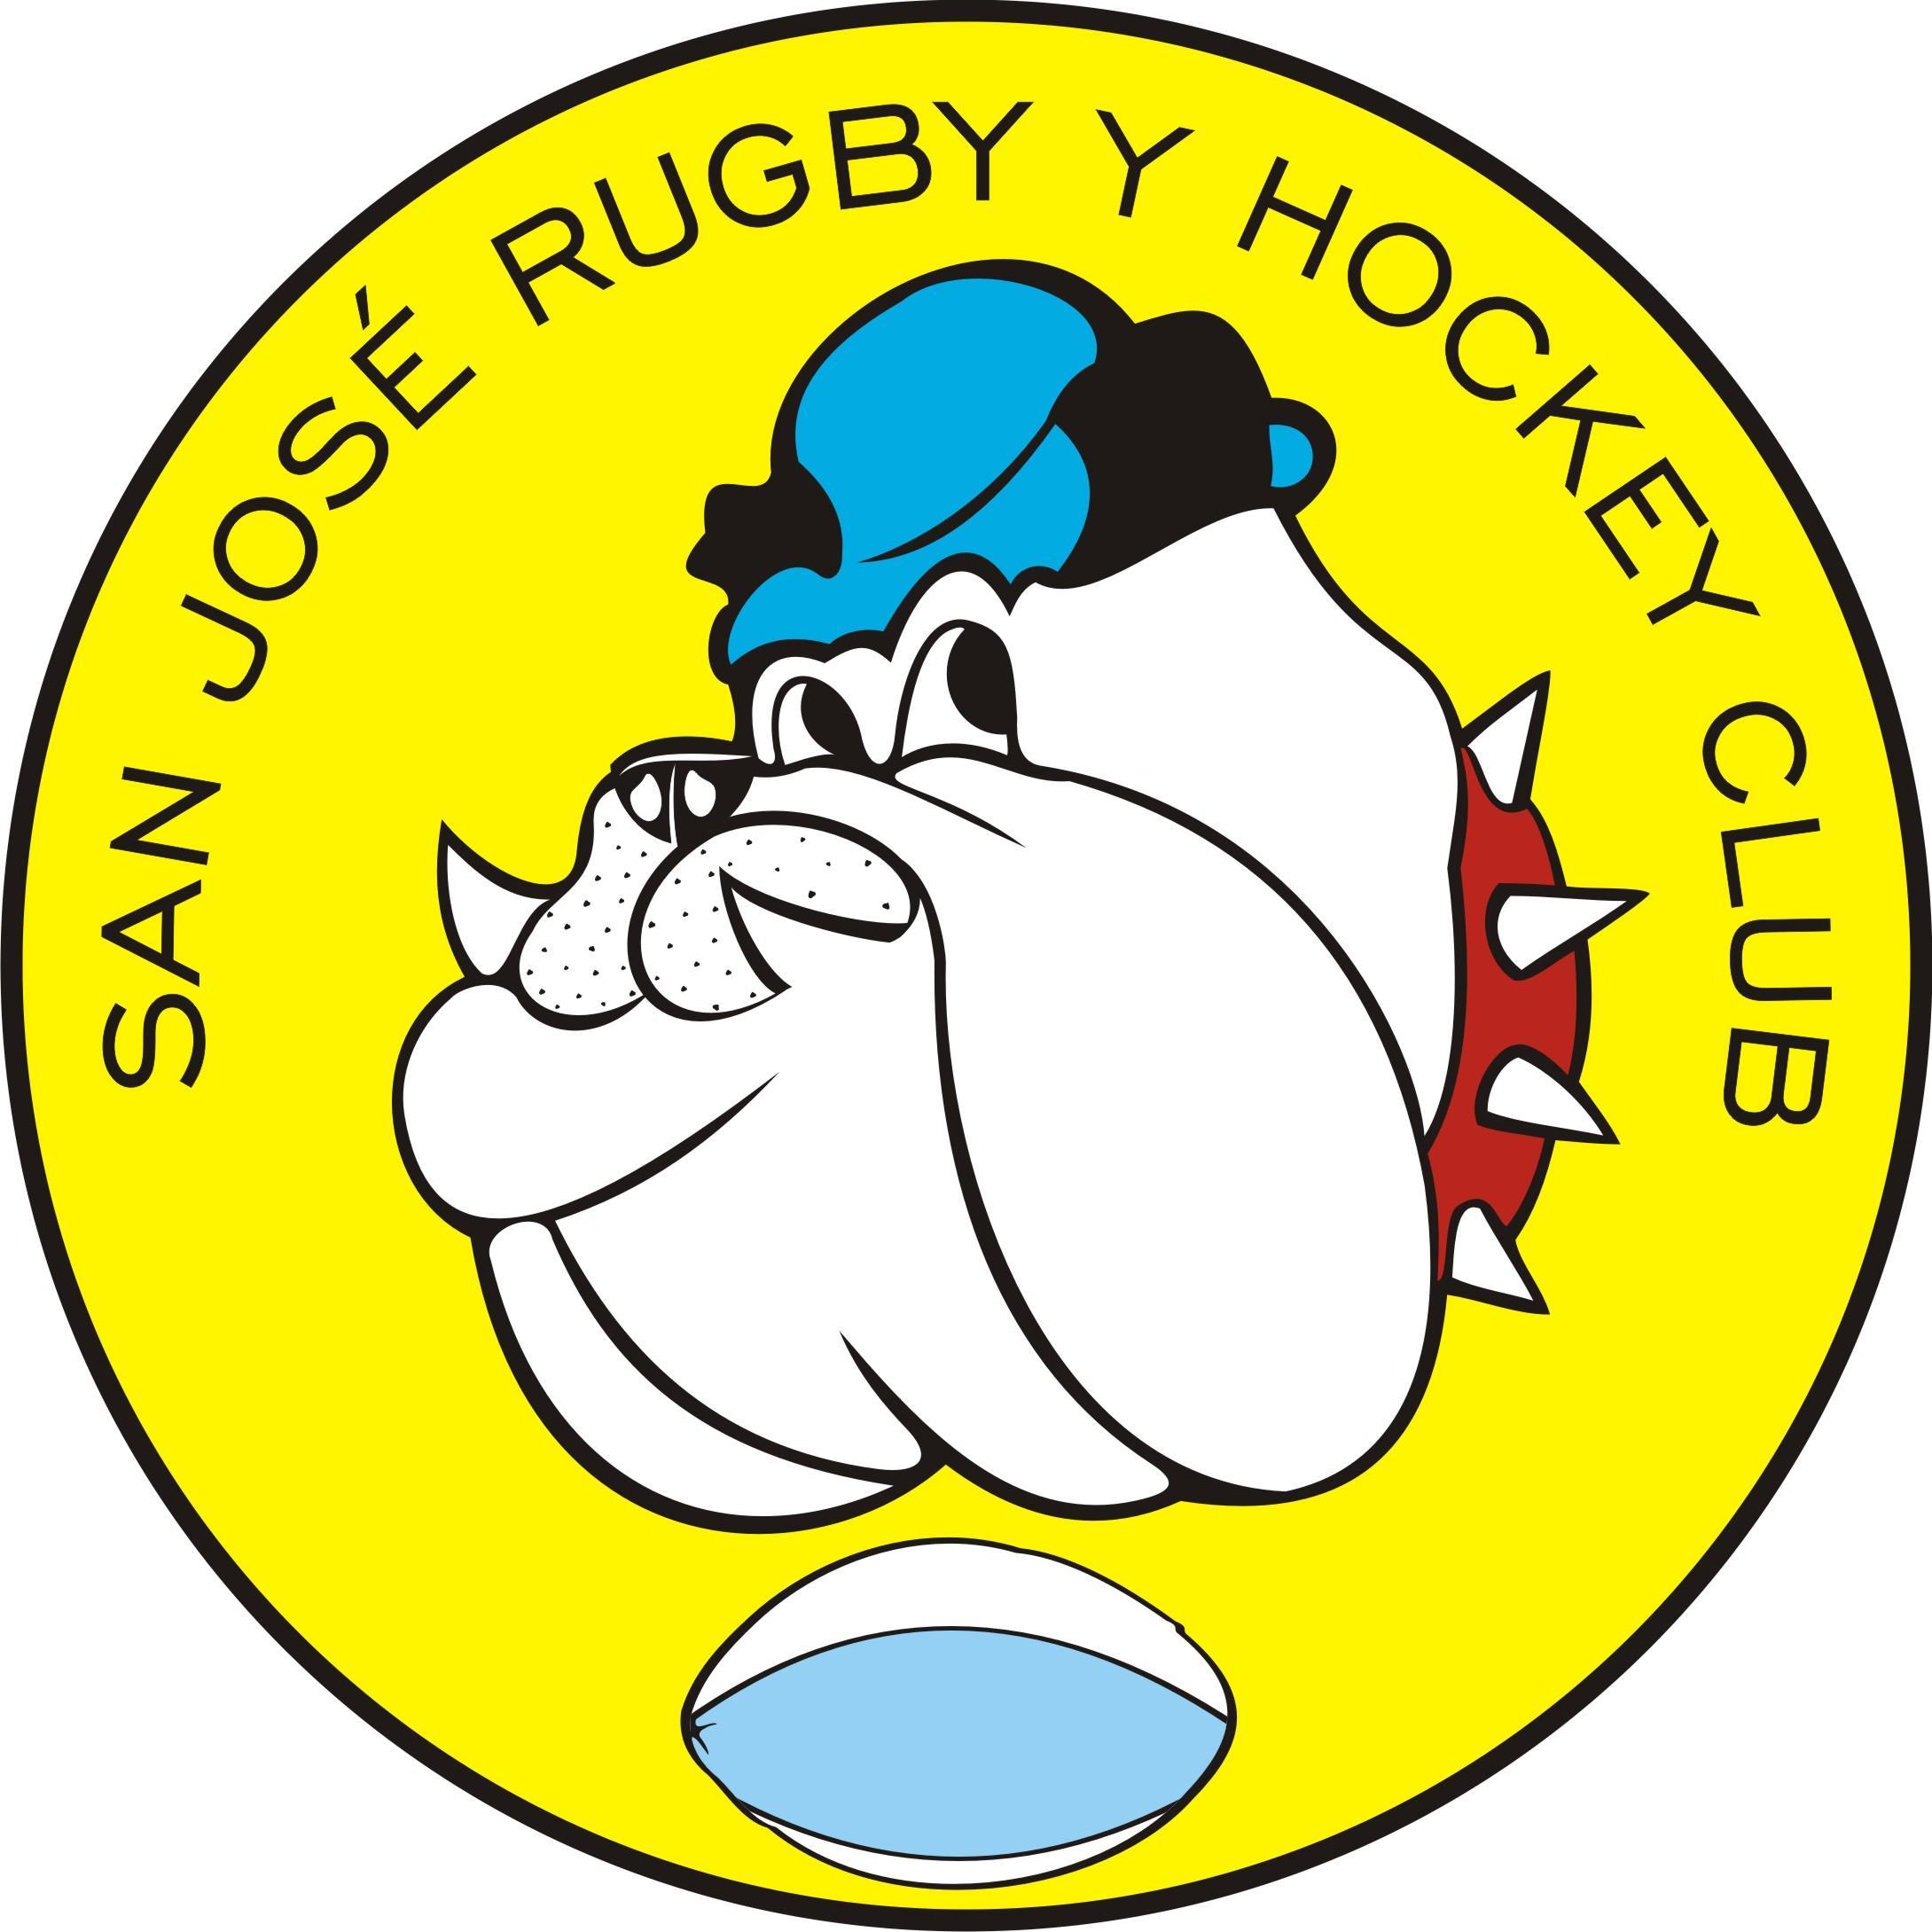 San José Rugby y Hockey Club